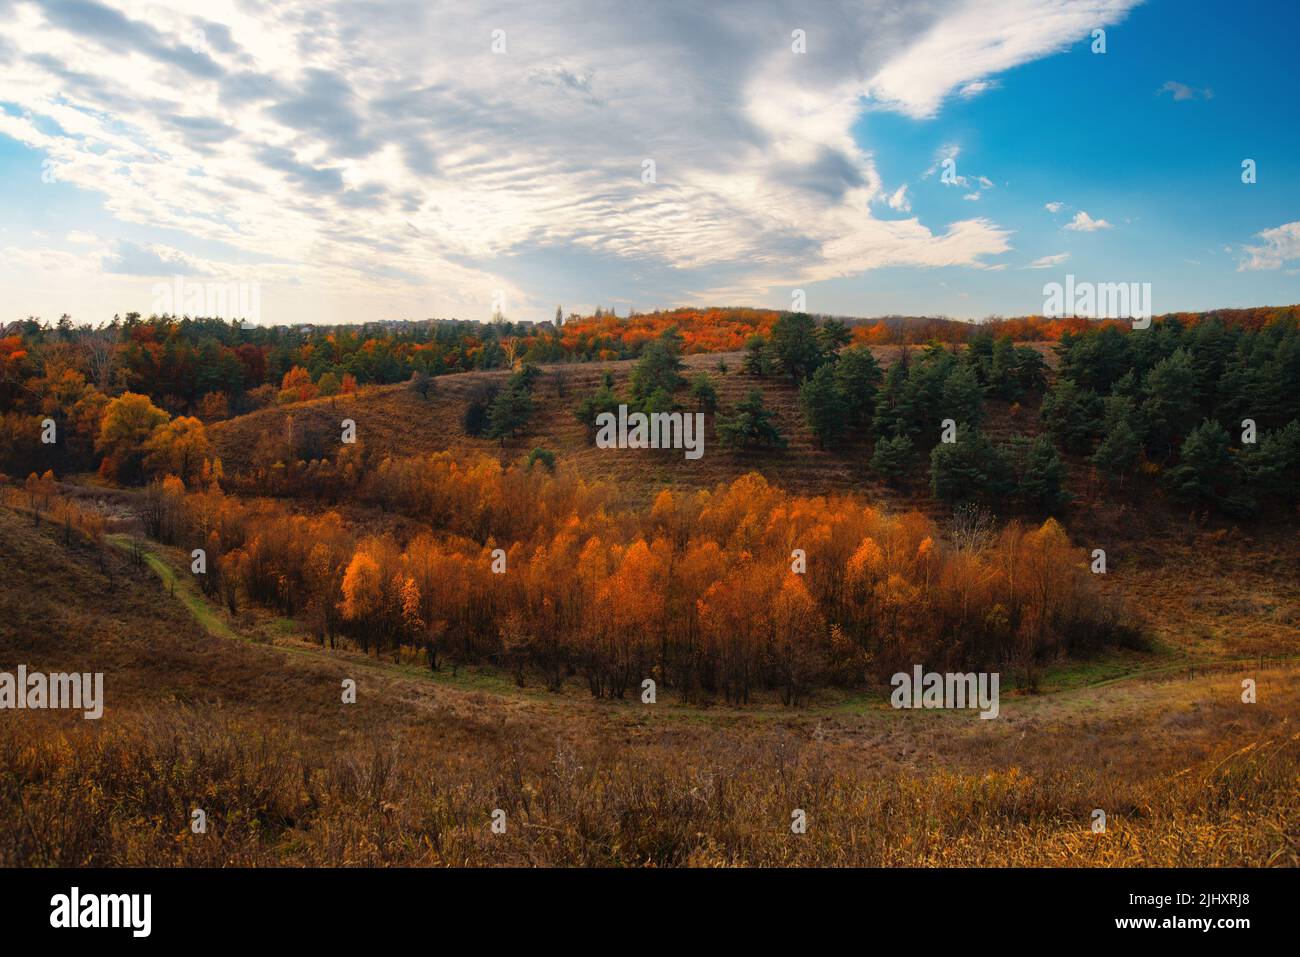 Bright autumn sunset over trees on hills in Ukraine Stock Photo